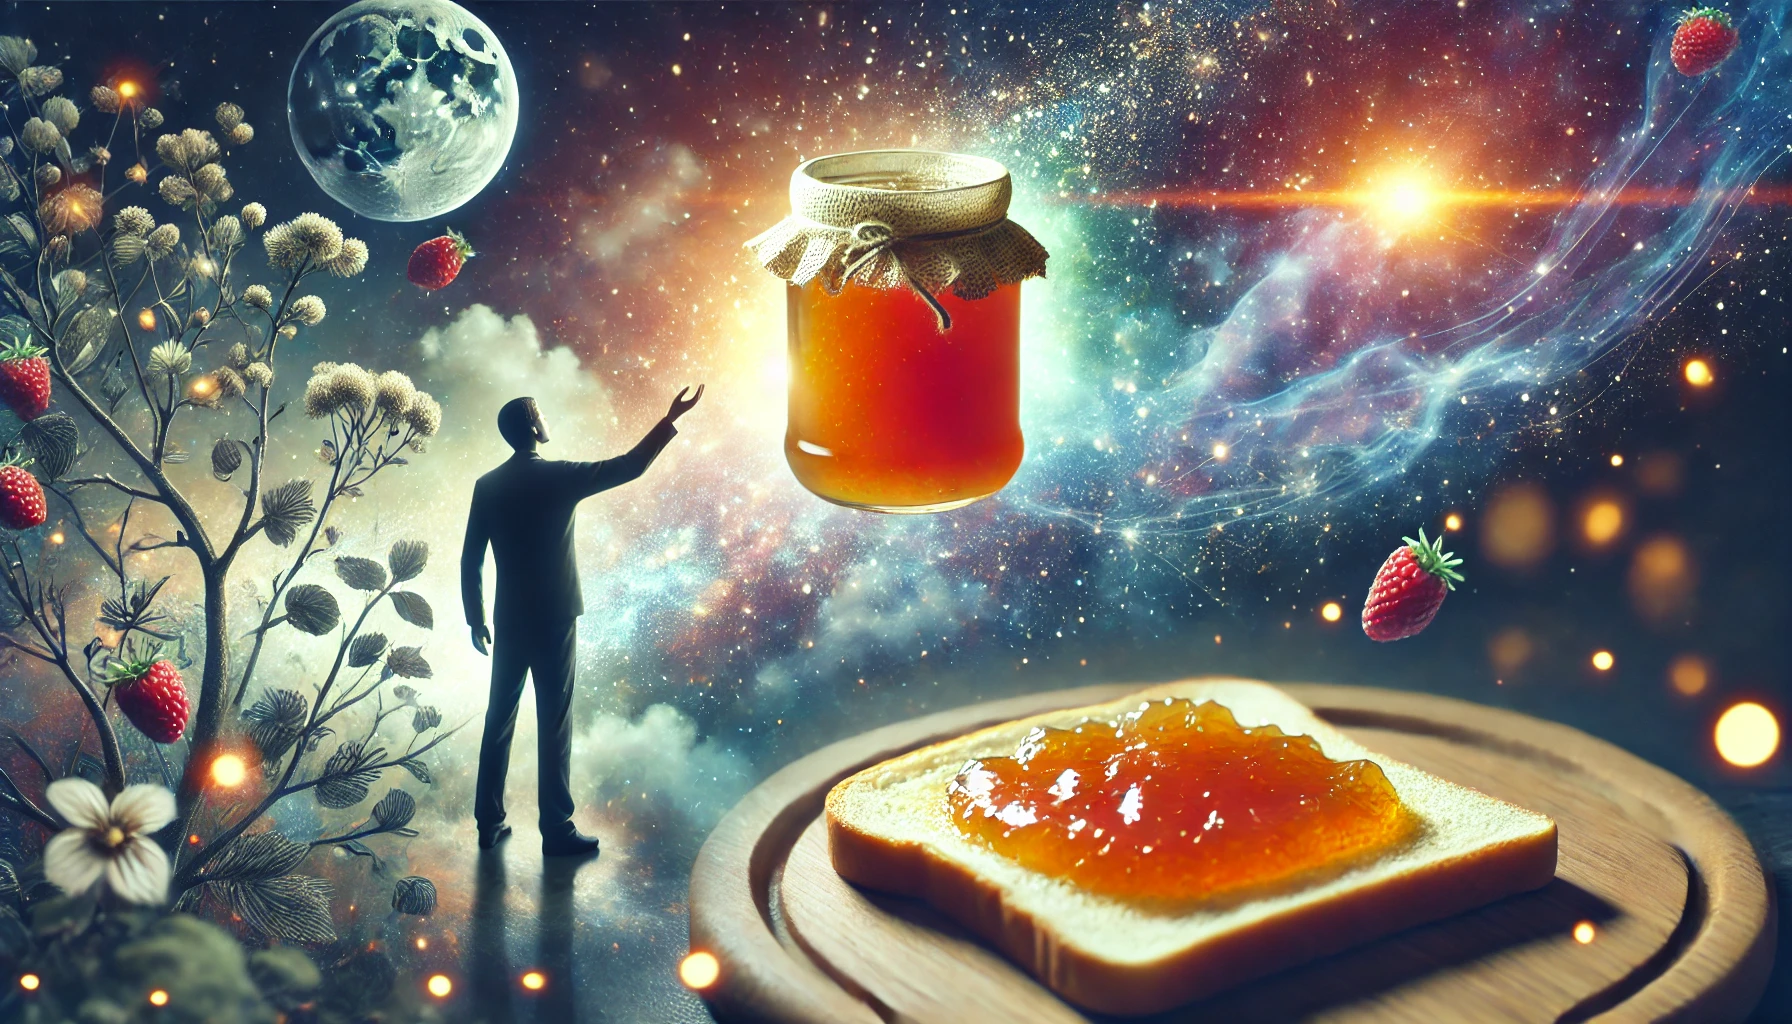 Rüyada Marmelat Görmek |  Marmelat Yemek |  Marmelat Yapmak Nedir?